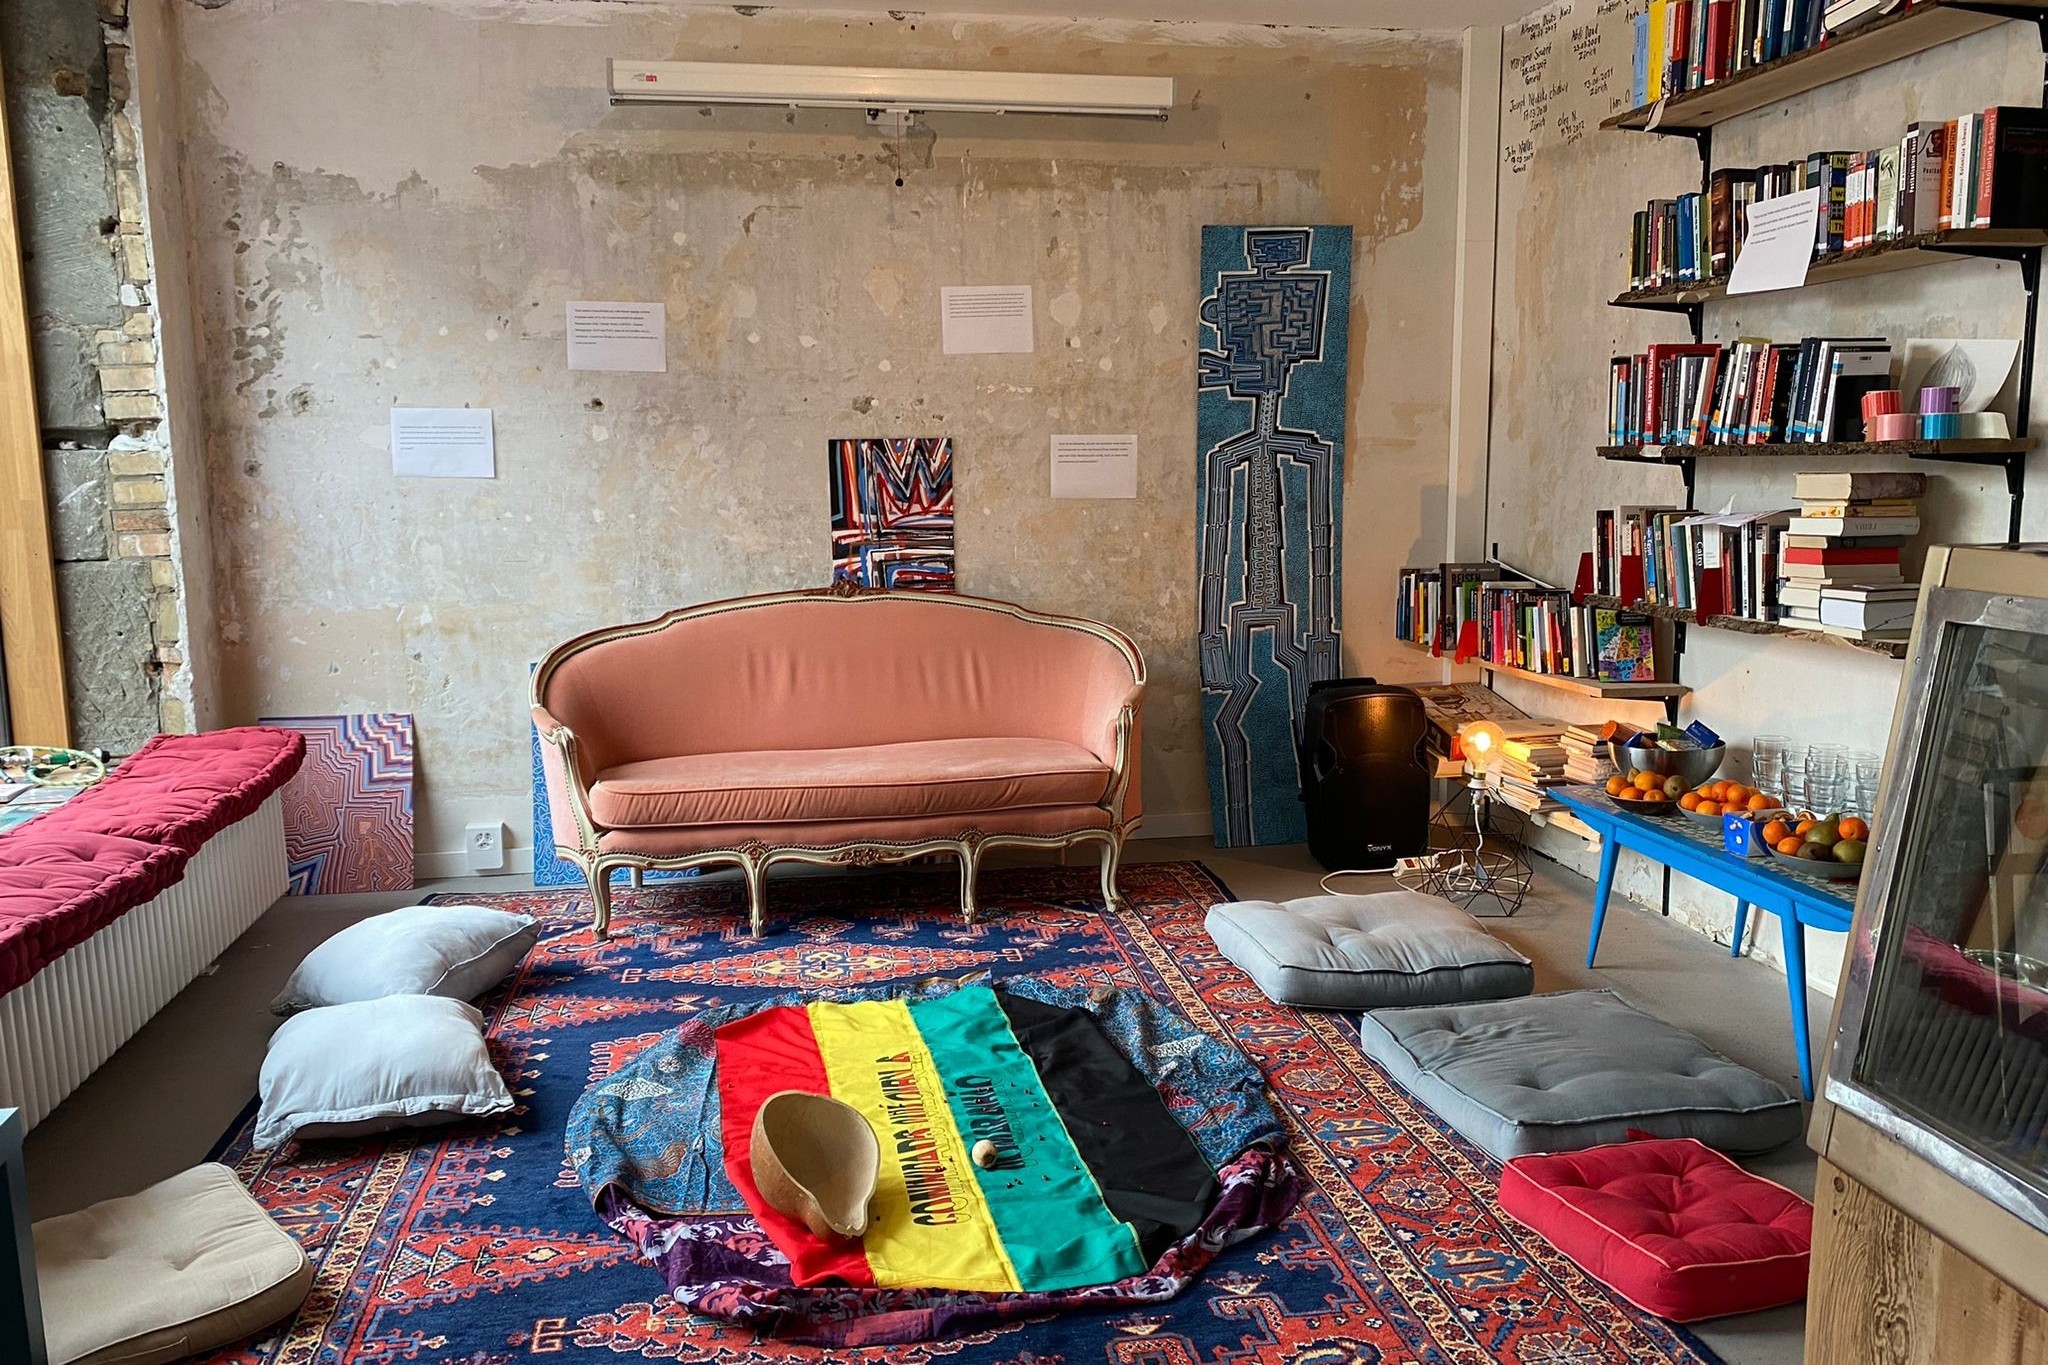 Der Living Room Bern vom Frieda-Projekt Oca: Wohnzimmer mit Kissen, Sofa und Büchern.